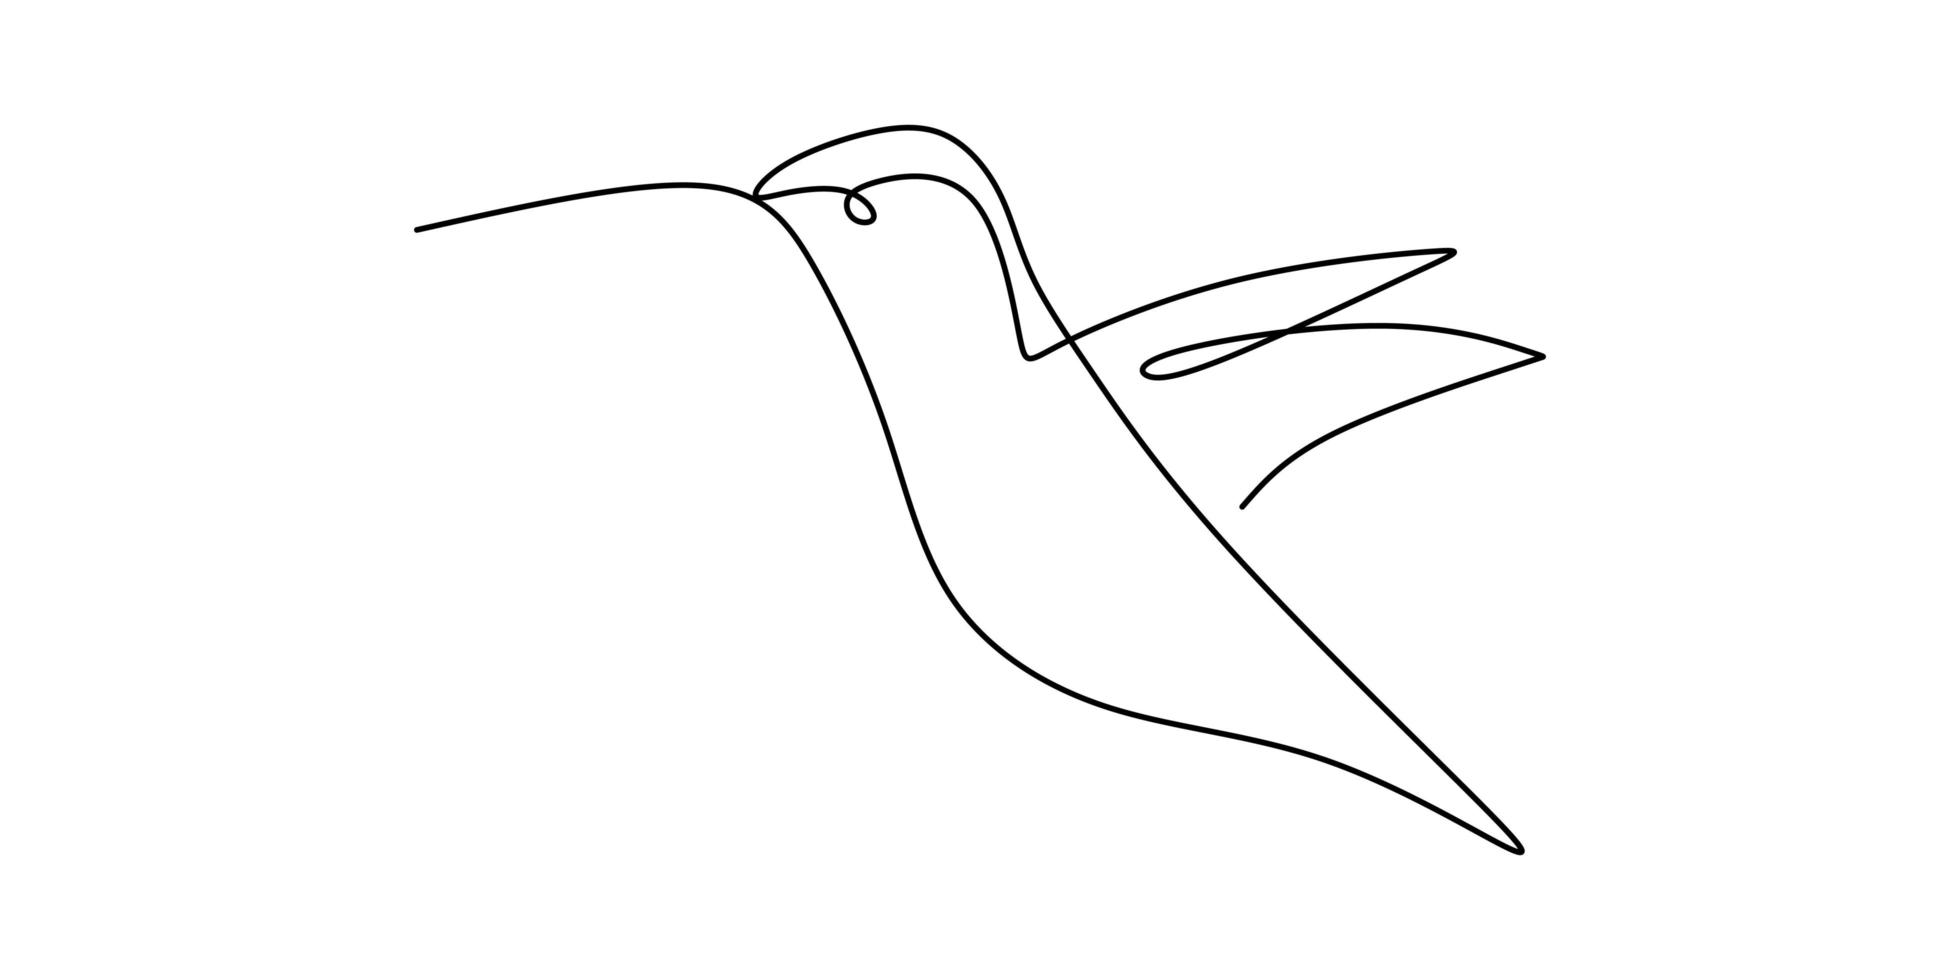 eine fortlaufende Strichzeichnung des niedlichen Kolibris. Hand gezeichnete Linie Kunst tropischen Vogel. vektor